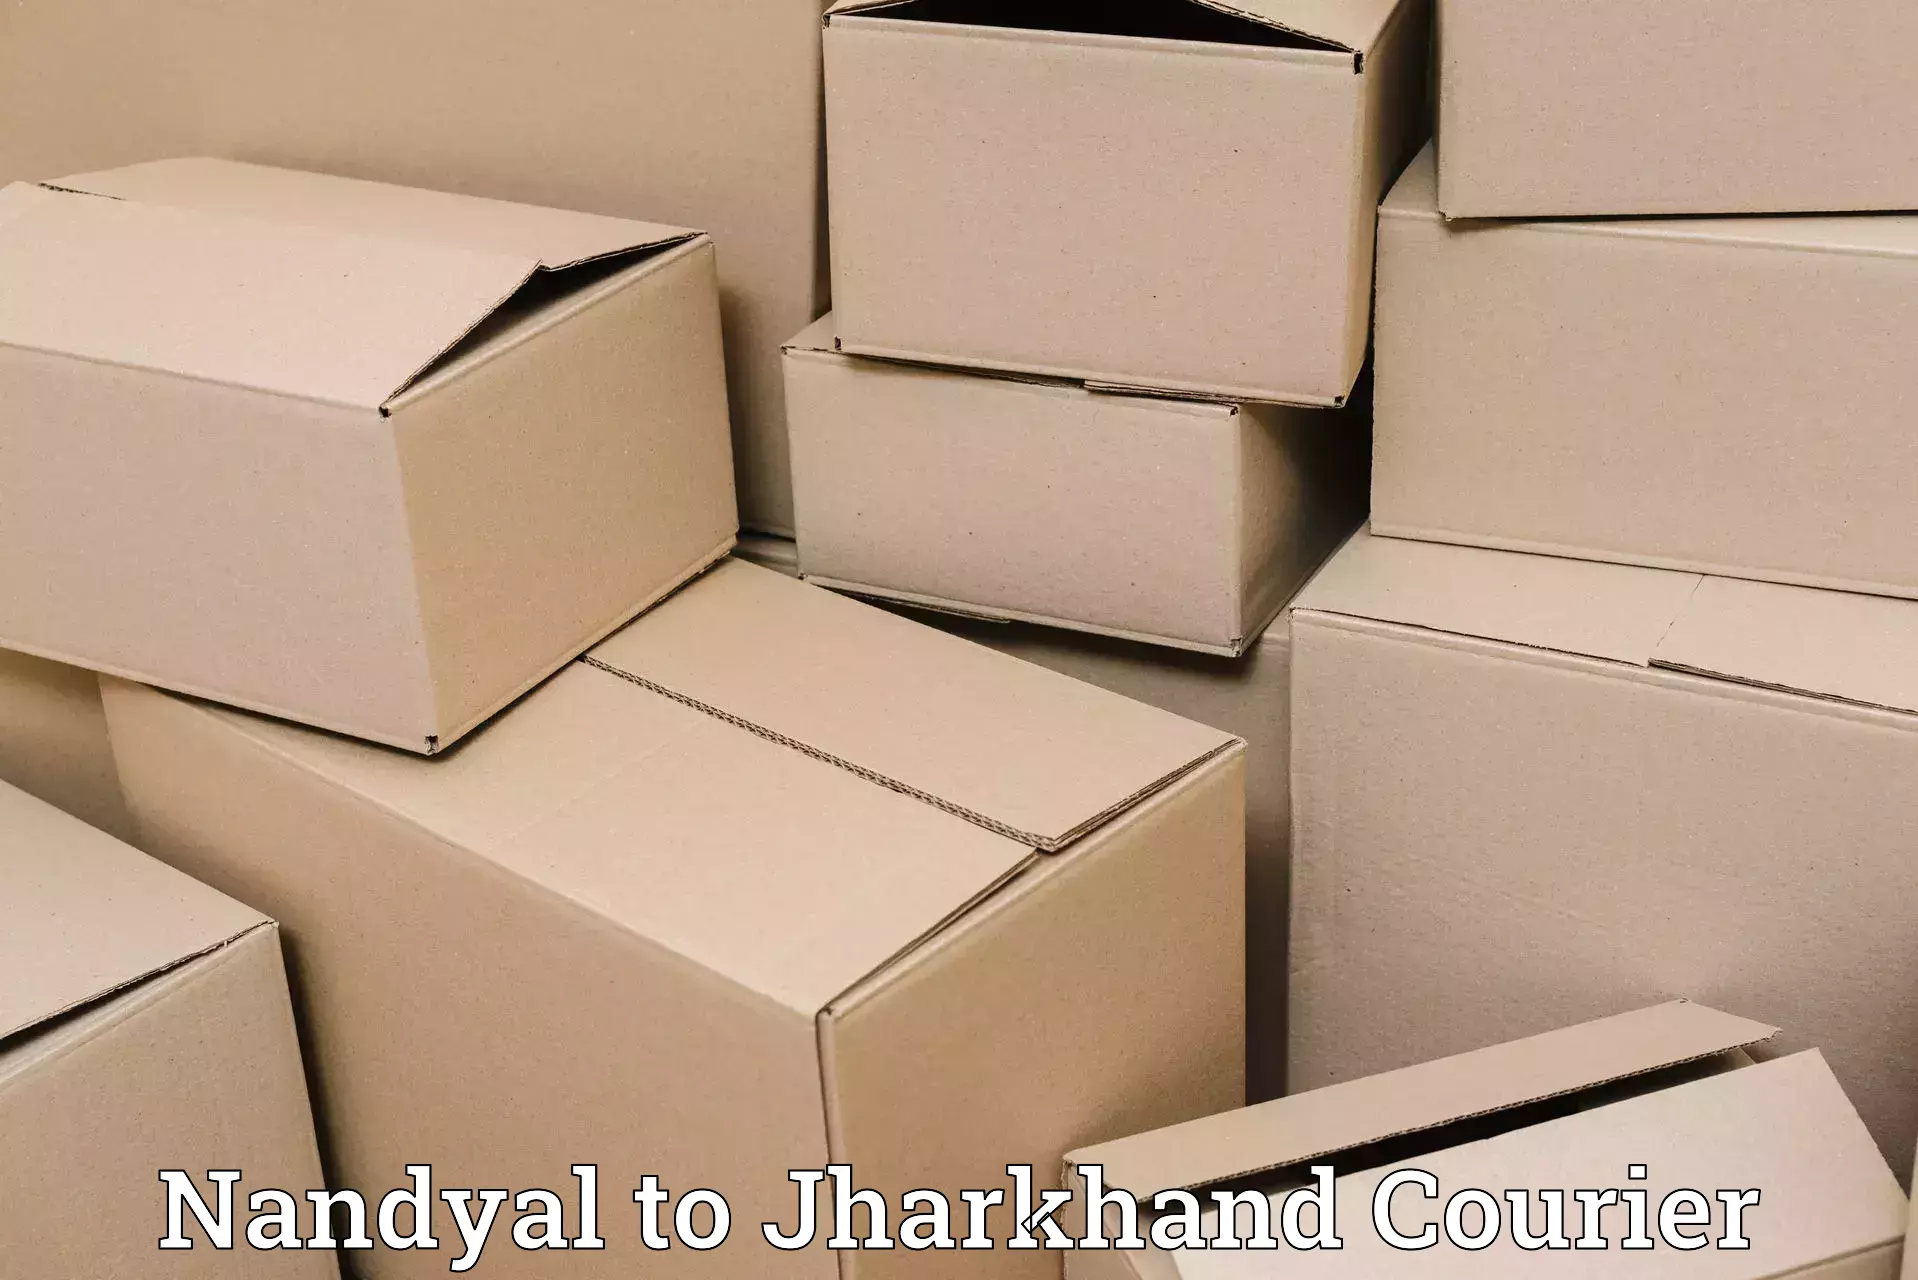 Nationwide delivery network Nandyal to Khalari Ranchi